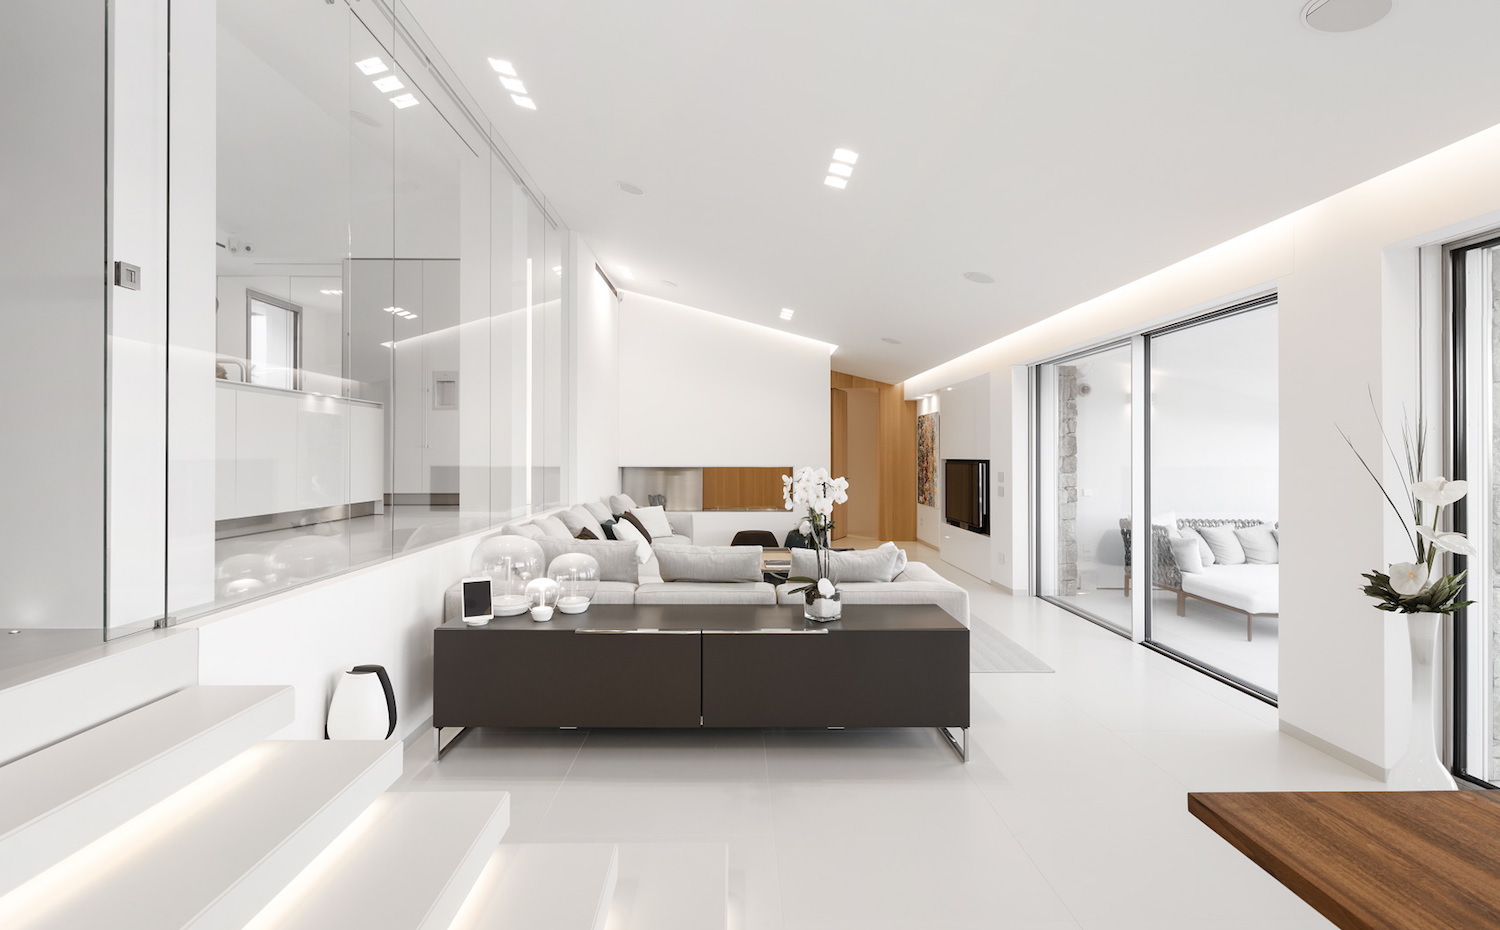 039. El color Bianco Crema con acabado Satin se extiende por el pavimento de las superficies interiores y el revestimiento de algunos baños